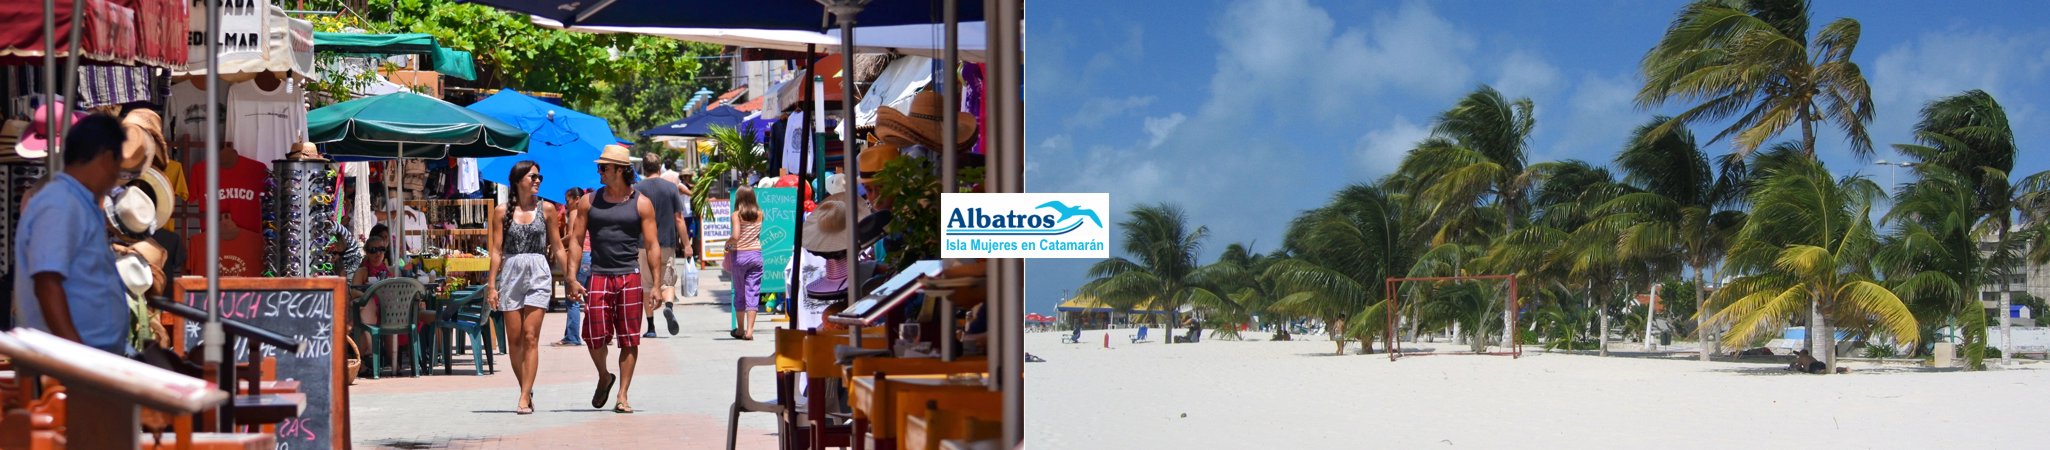 Tour barato a Isla Mujeres desde Cancun, menores gratis